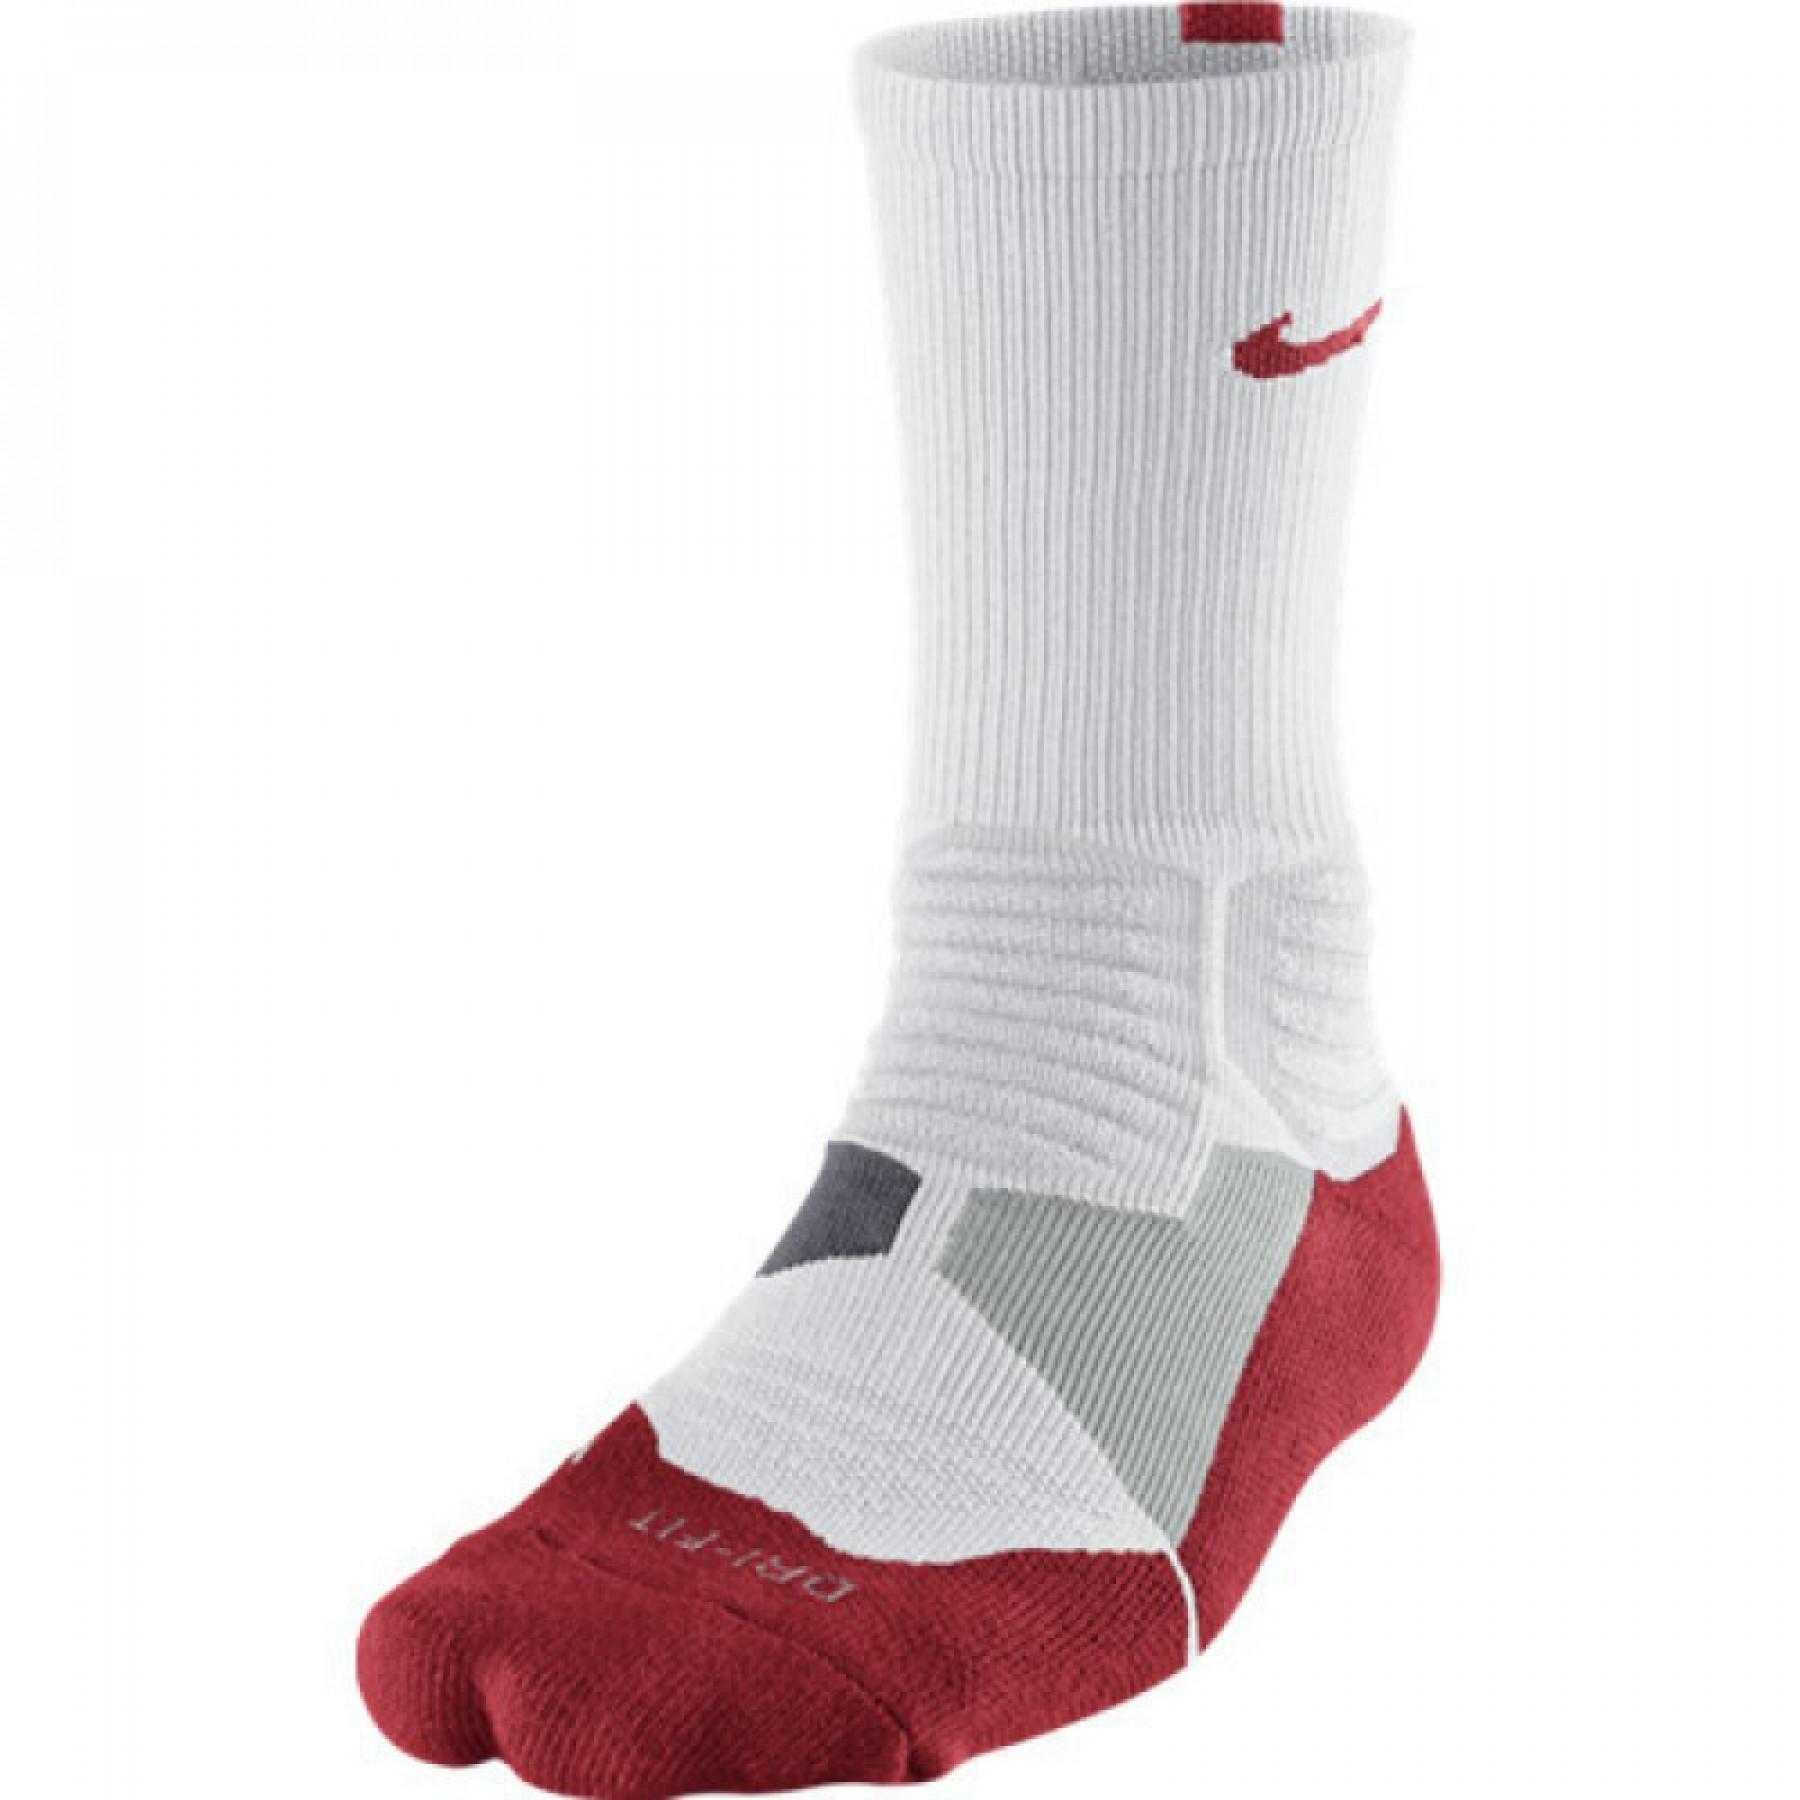 Juego de 3 pares de calcetines Nike HyperElite